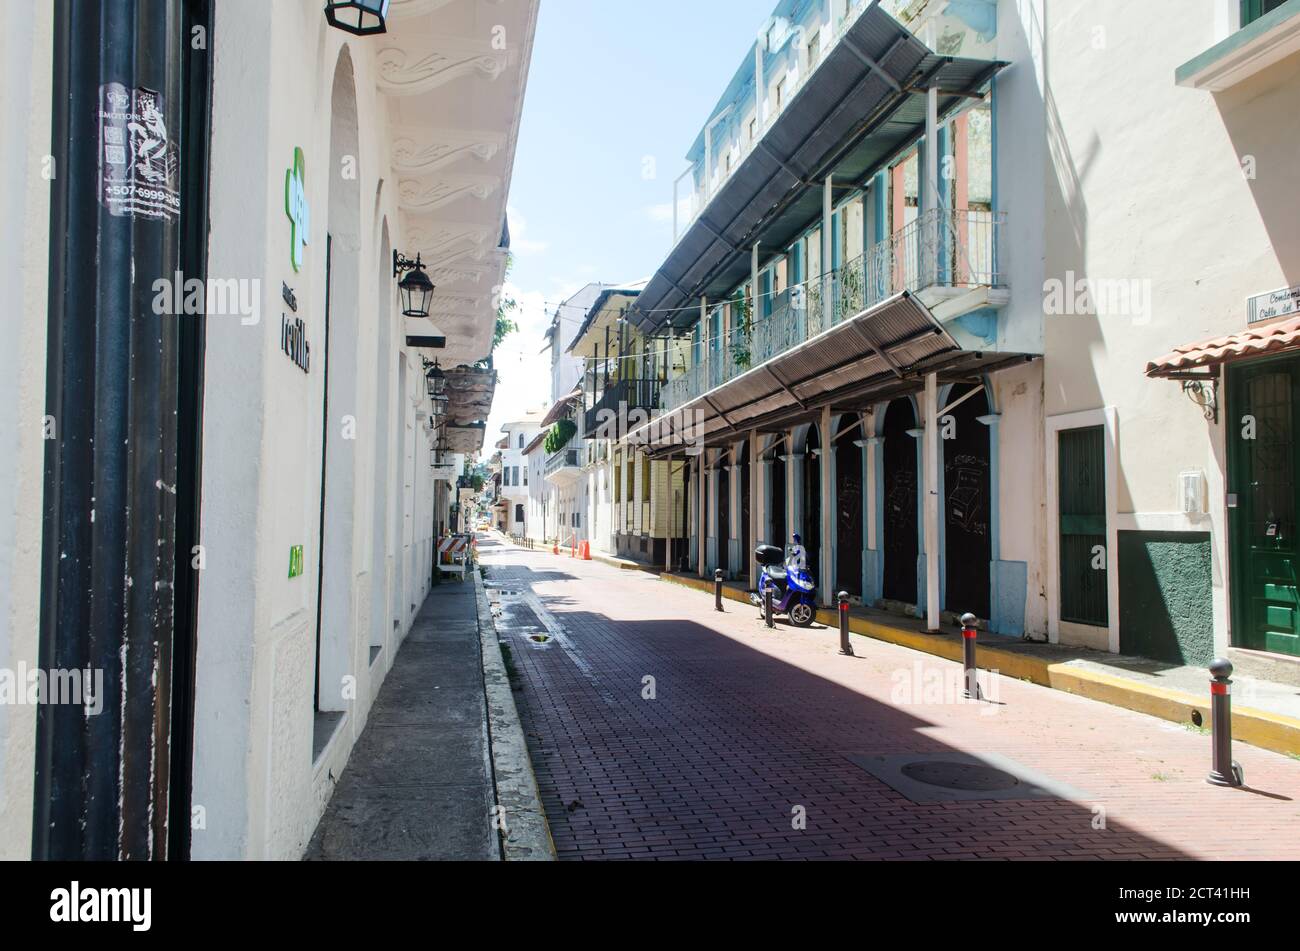 Perspektivischer Blick auf eine Straße in der Altstadt an einem Samstag während der COVID-19 Pandemie. Früher war es ein sehr überfüllter Ort vor der Gesundheitskrise Stockfoto